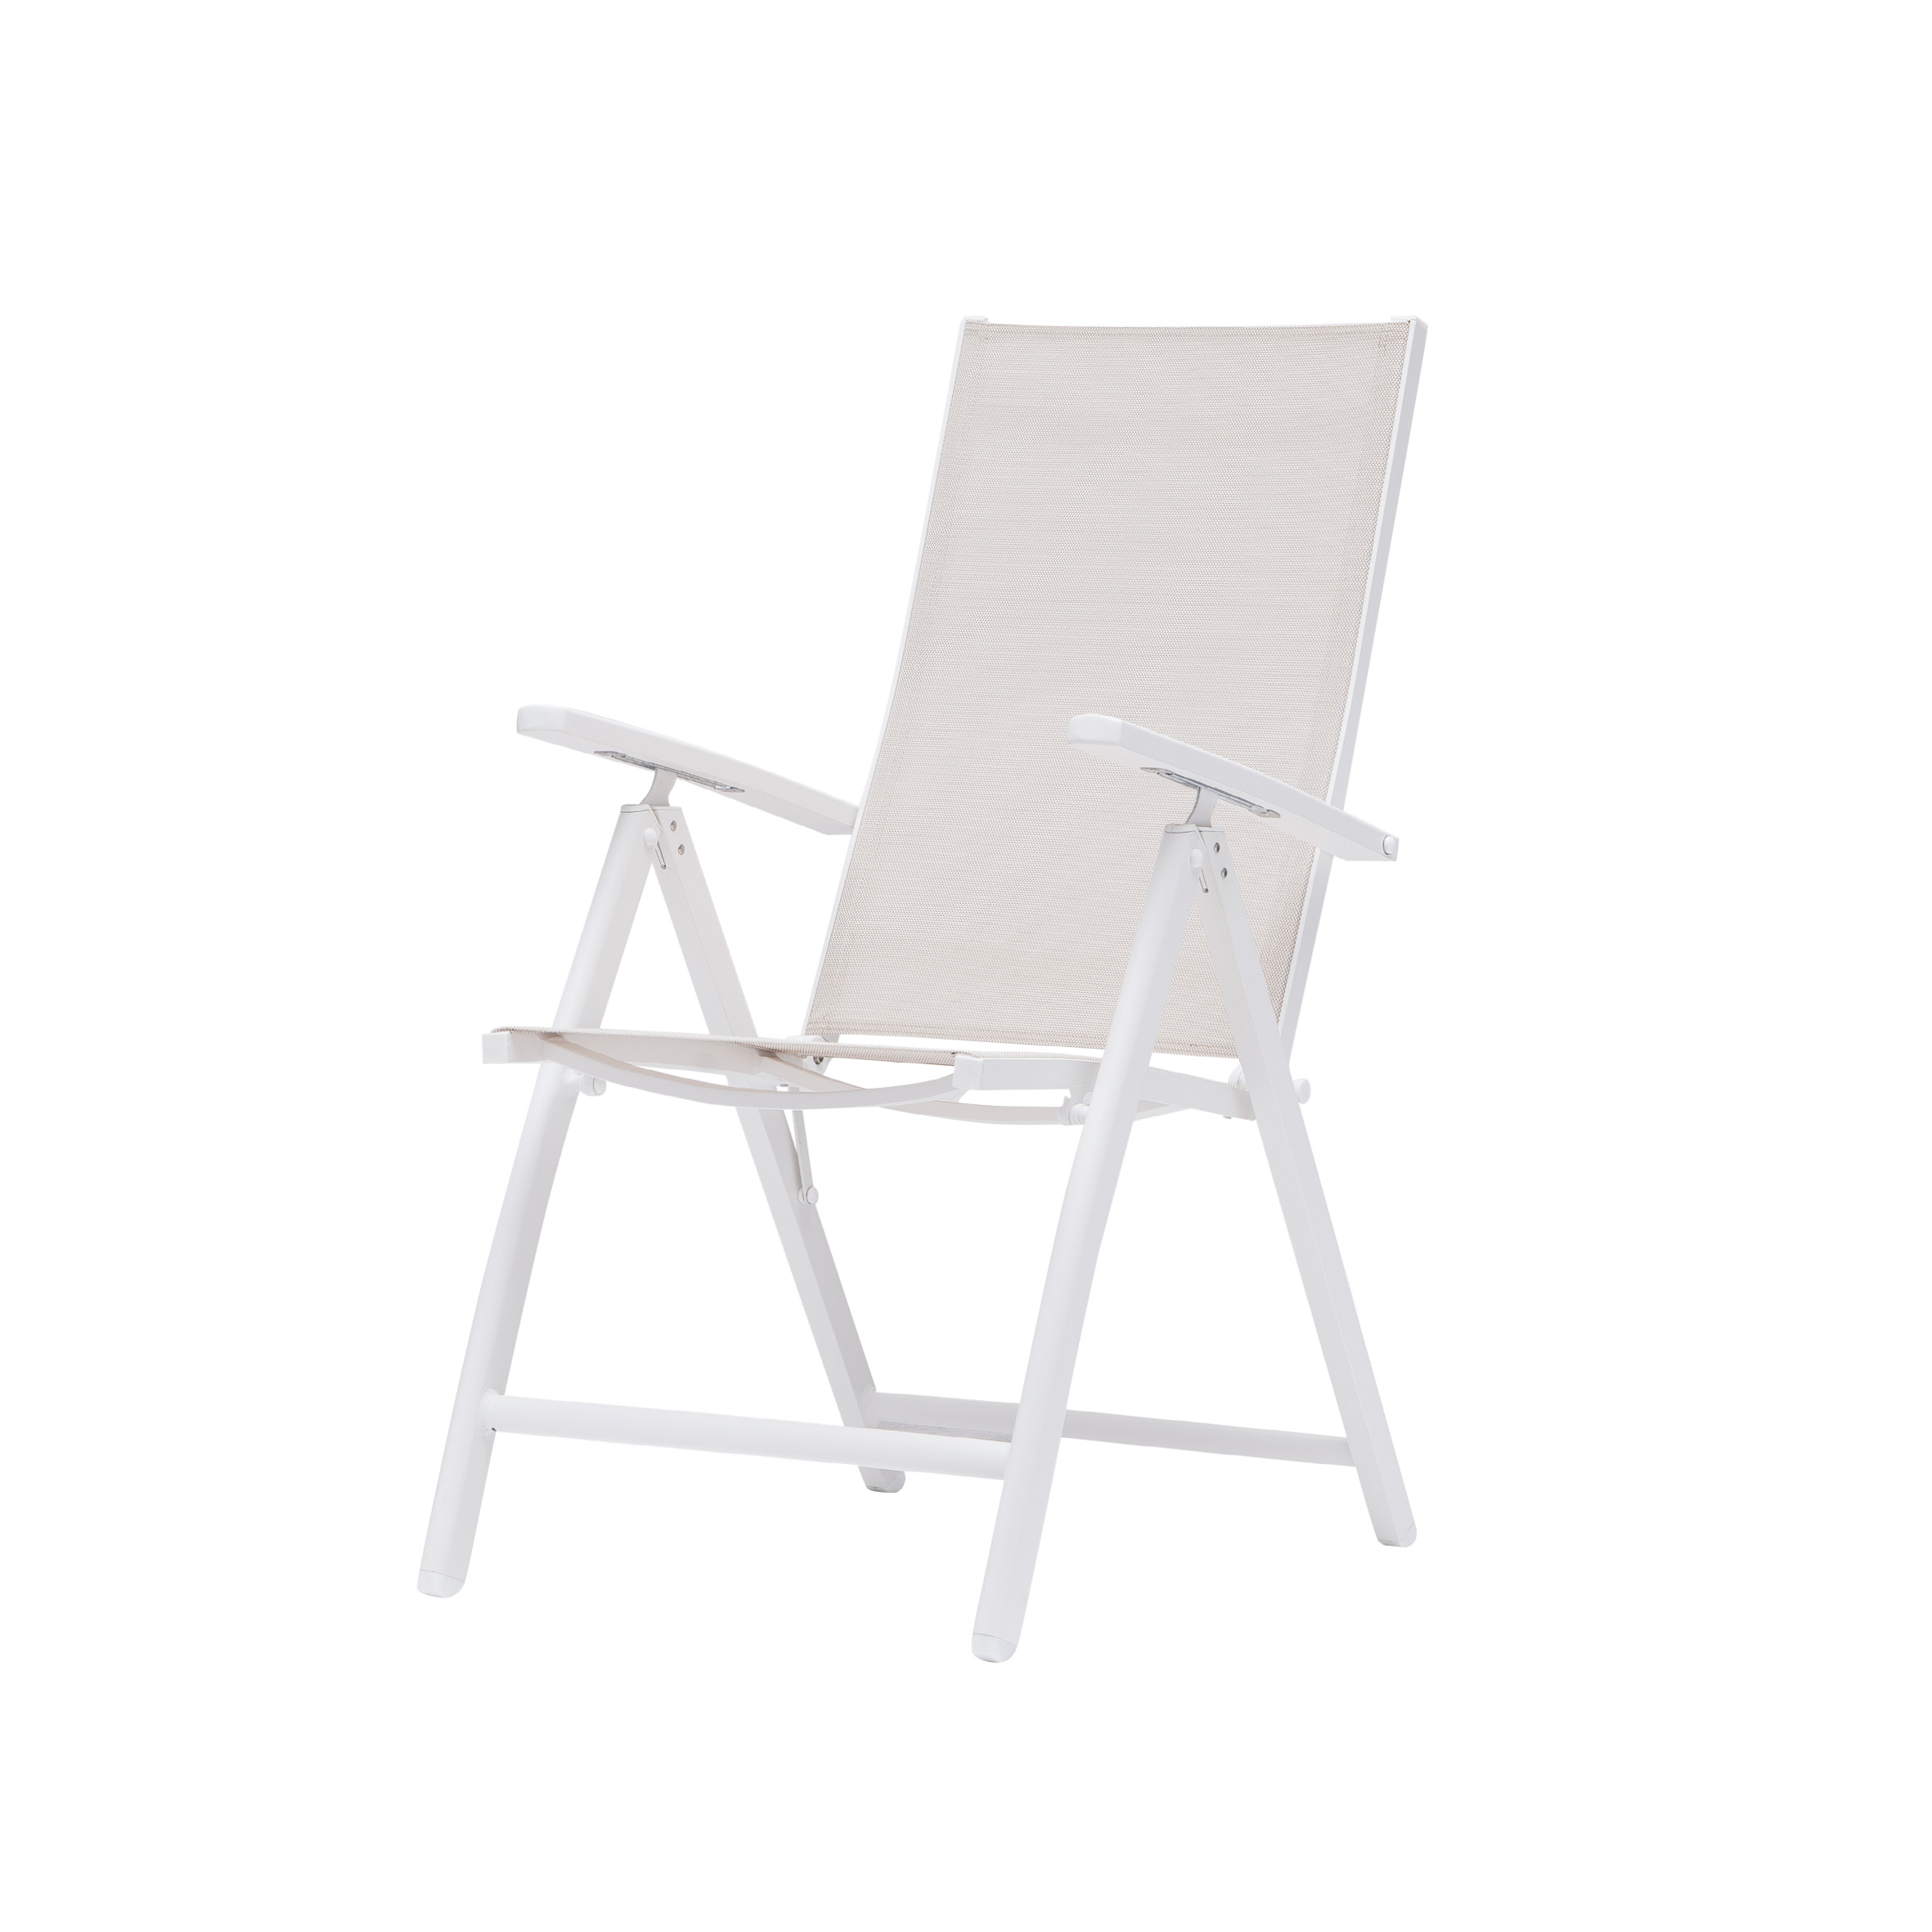 Smart textile folding chair S4